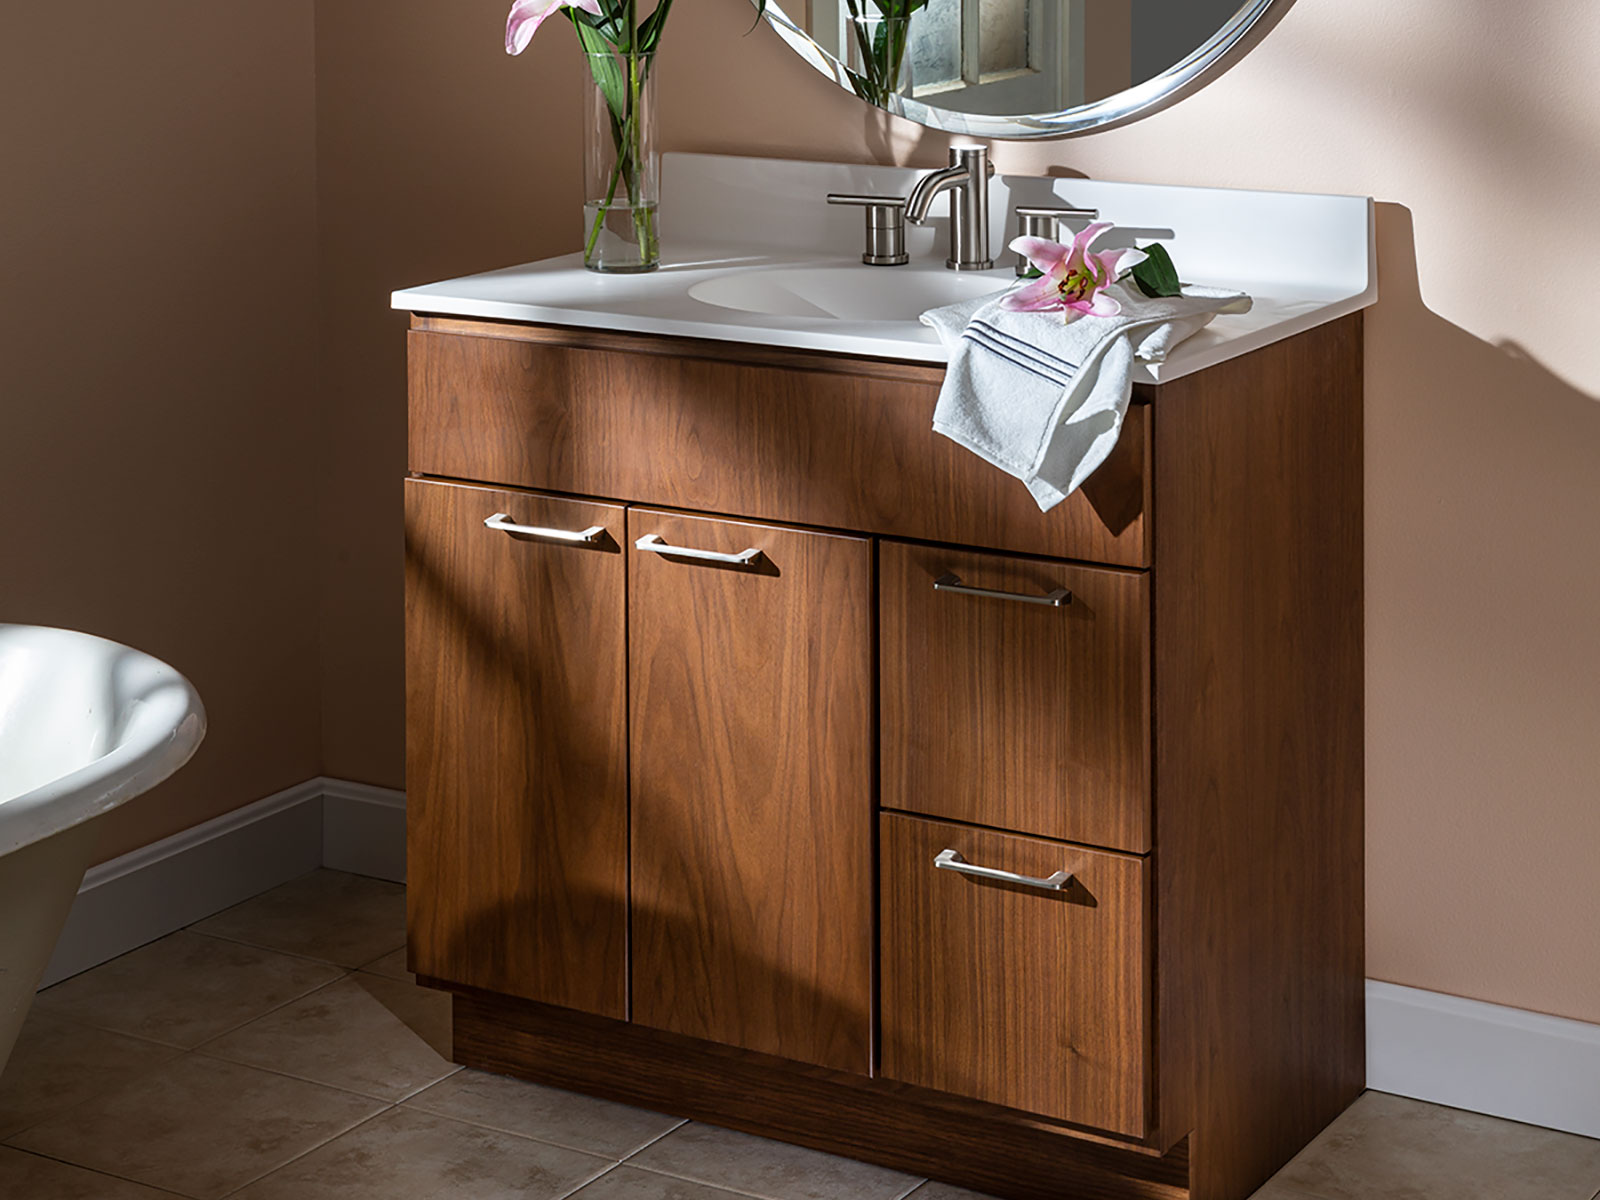 Bath Vanities And Cabinetry, All Wood Bathroom Vanity